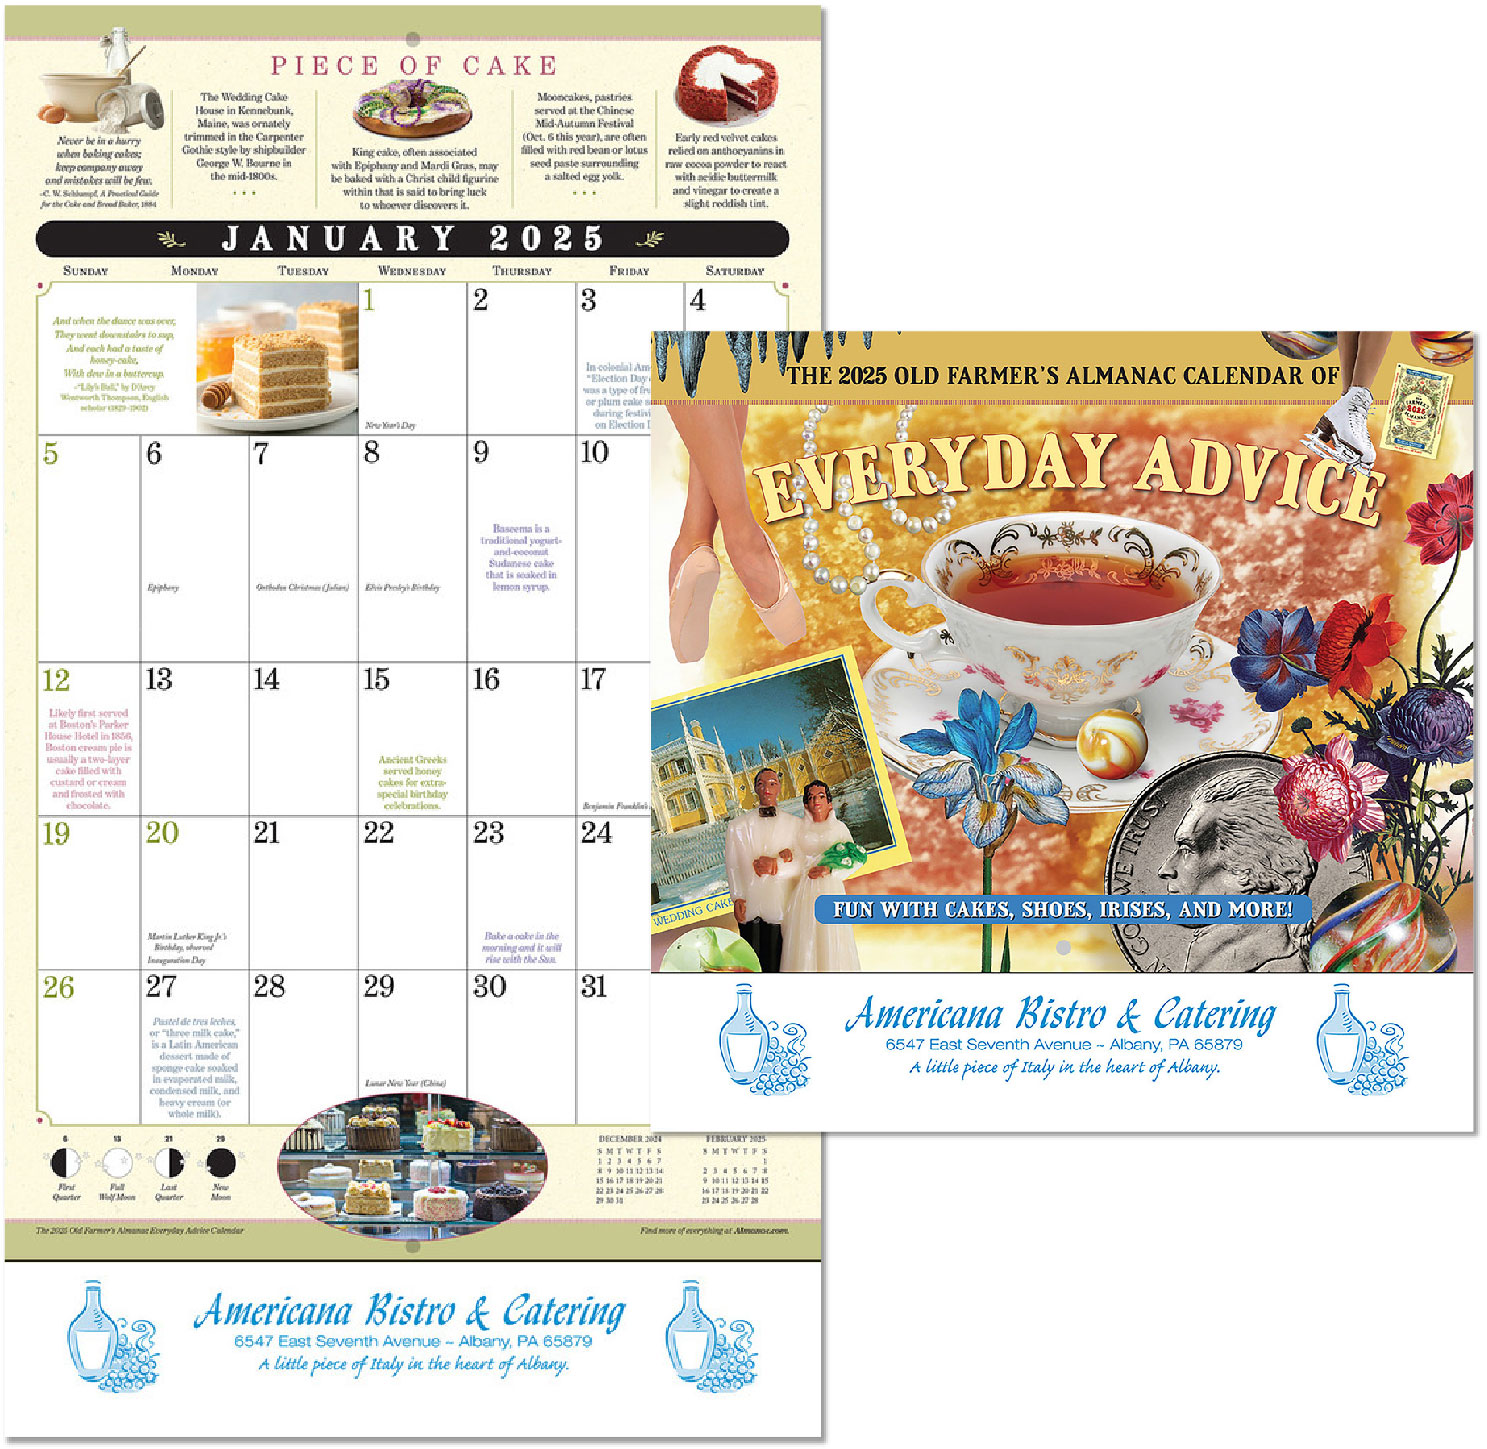 Custom Imprinted Calendar - The Old Farmer's Almanac Everyday Advice #OF56HH1